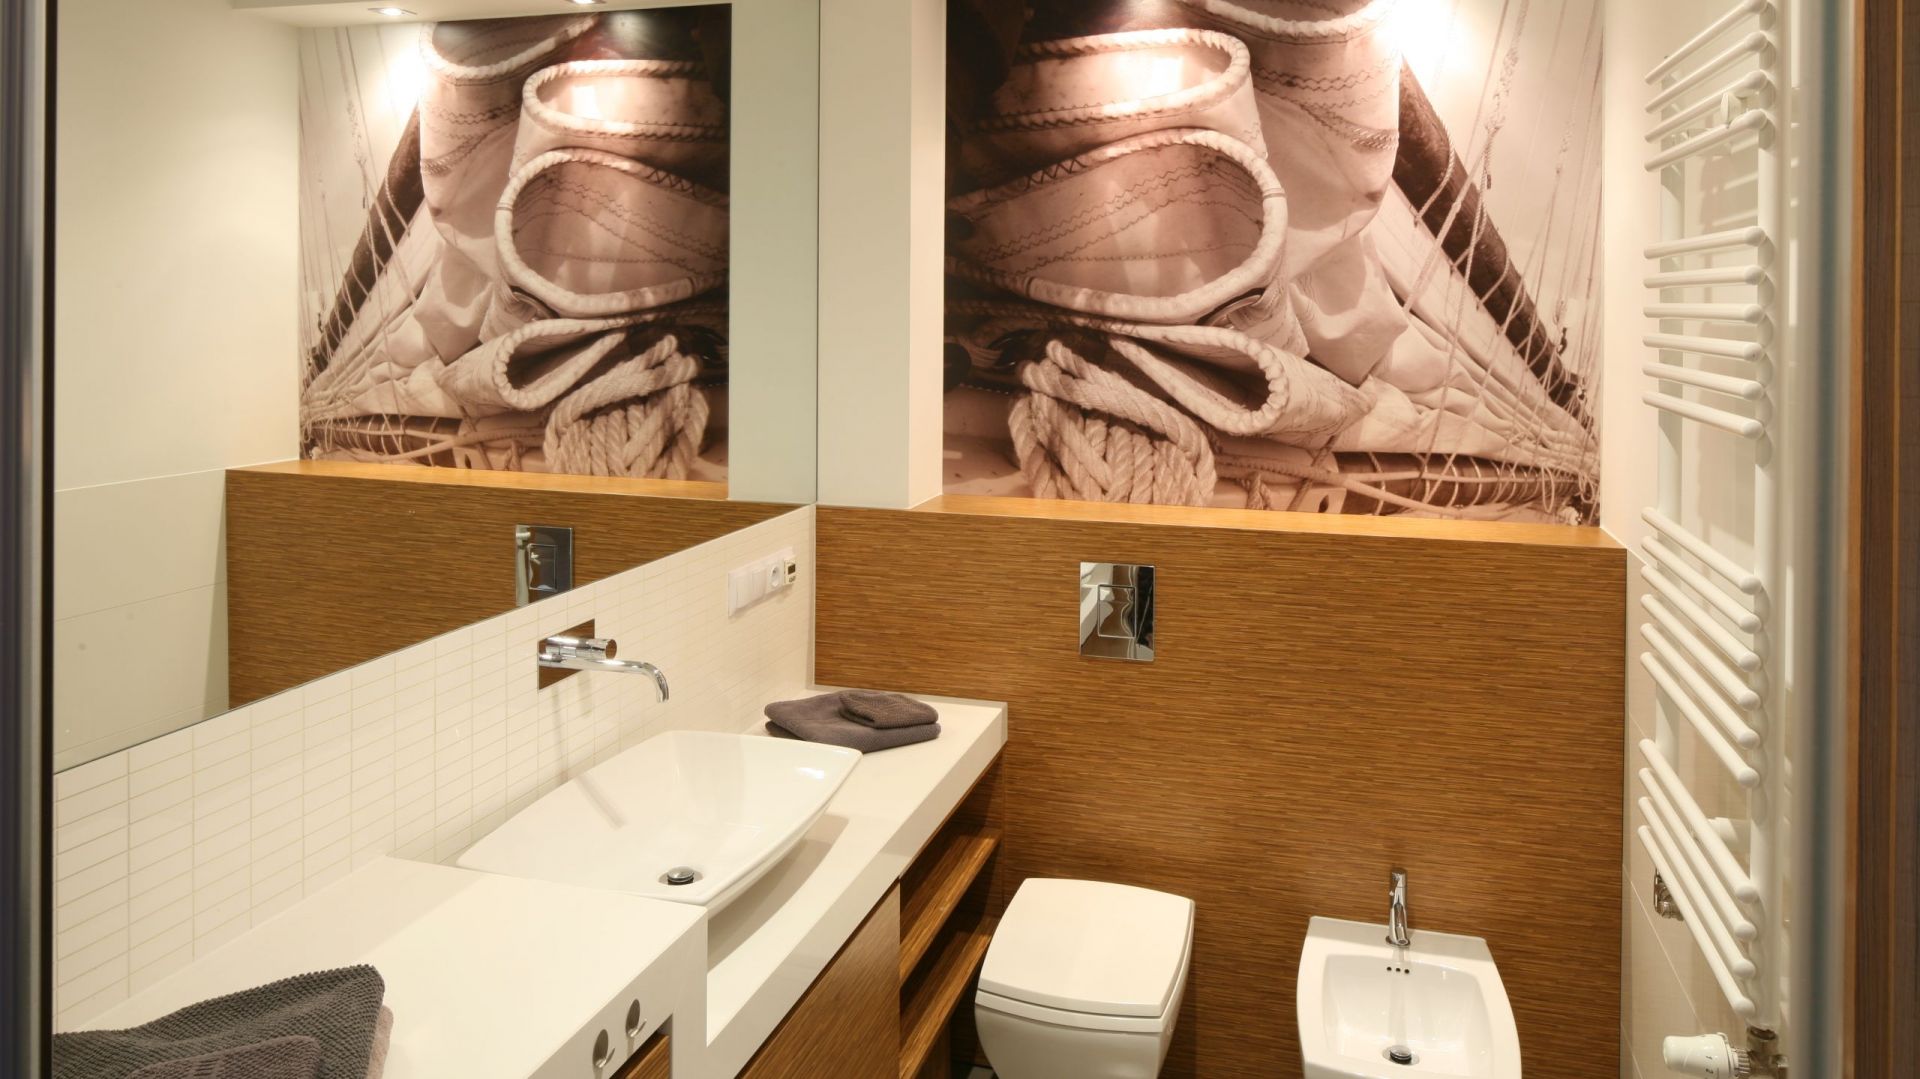 Modne lustra: 15 sposobów na optyczne powiększenie łazienki